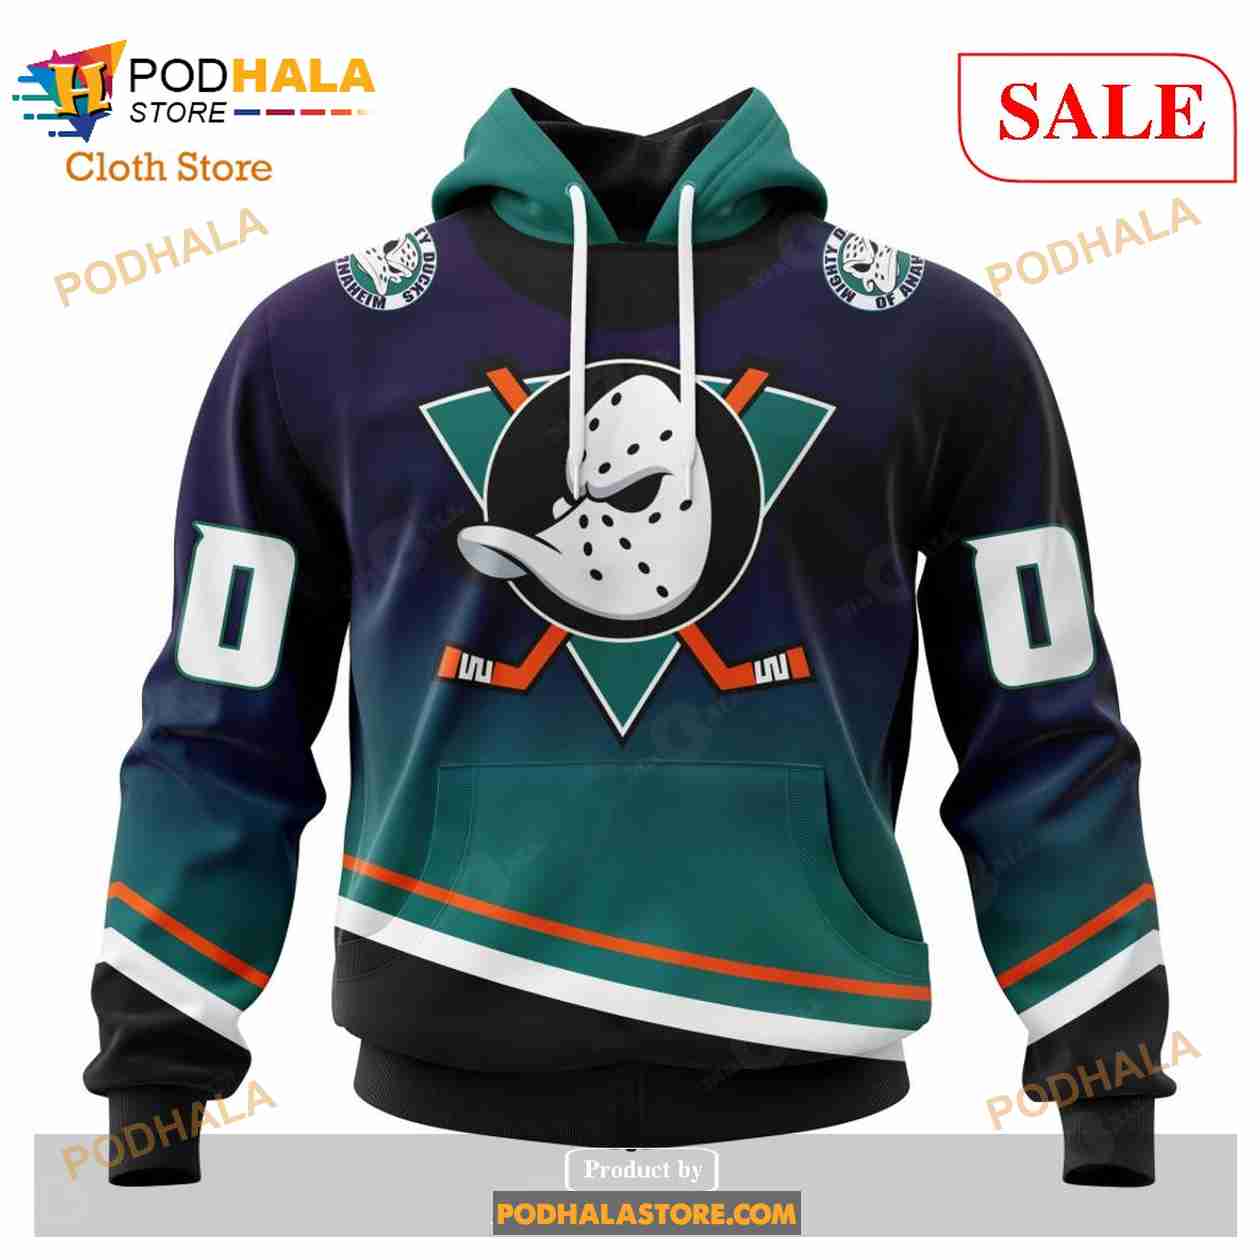 90s Anaheim Mighty Ducks Dark Grey Sweater - 5 Star Vintage